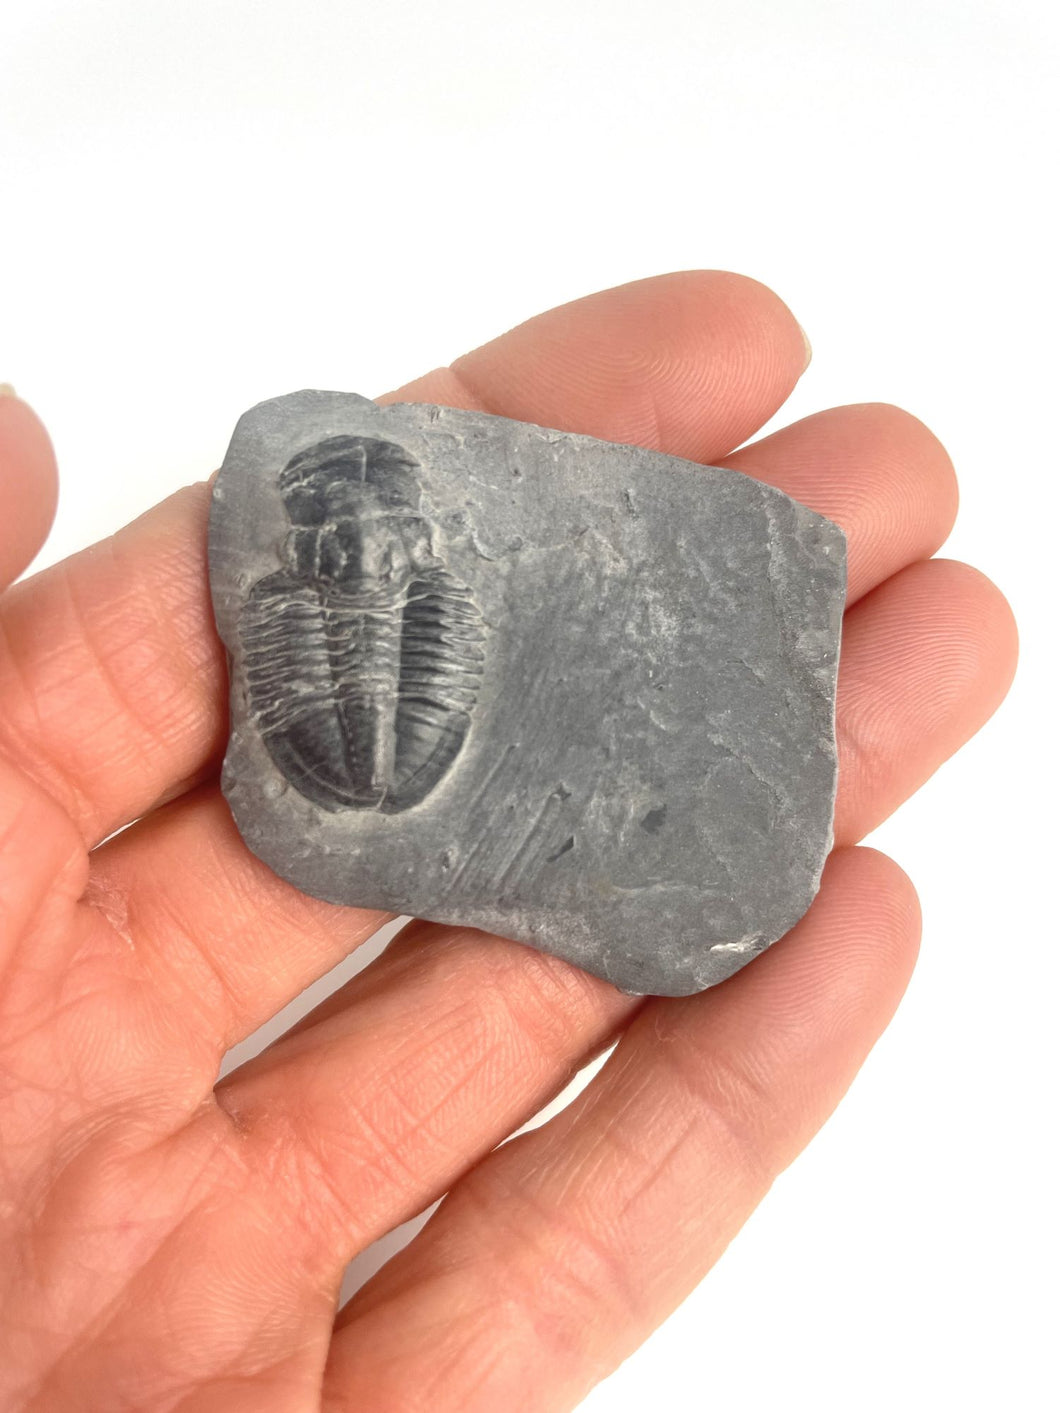 Asaphiscus wheeleri Fossil Trilobite Molt 1-1 1/8